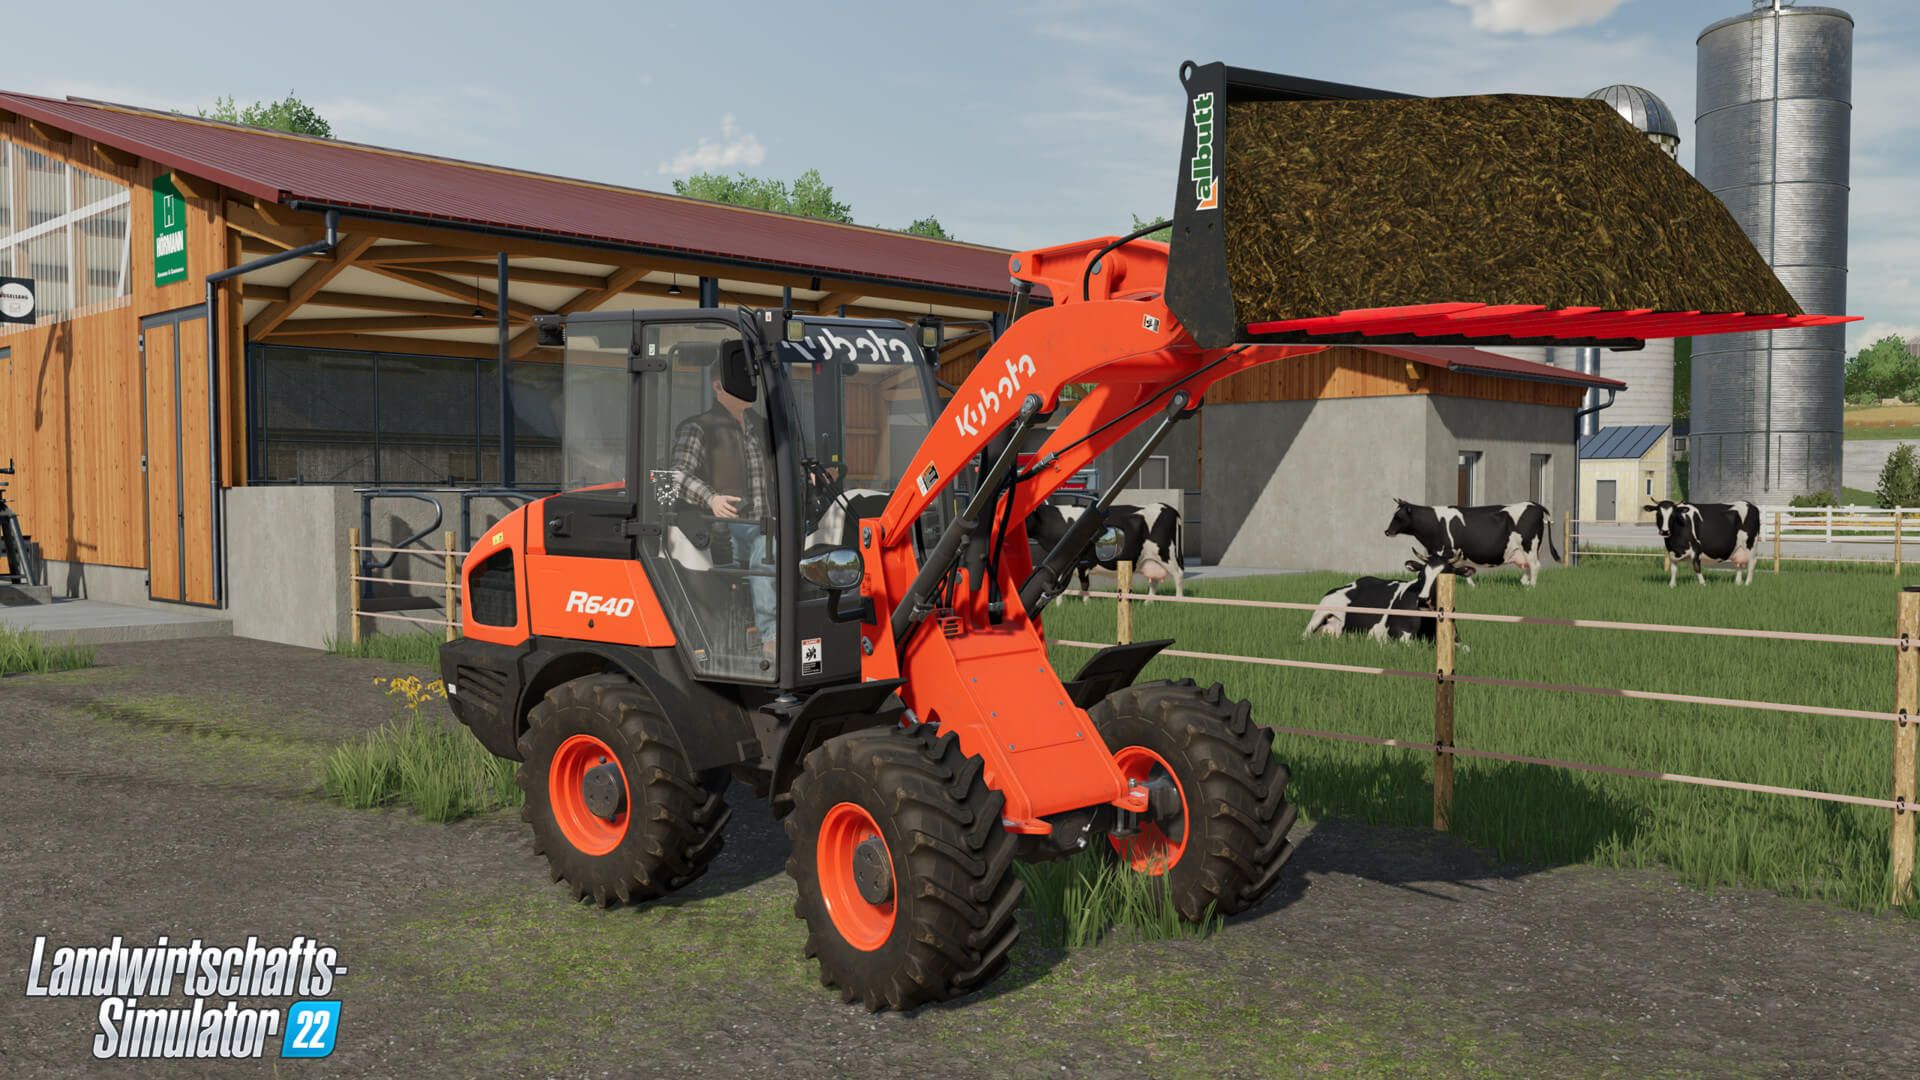 Landwirtschafts-Simulator 22 - Neues Add-On bringt Fahrzeuge und Equipment  des weltbekannten Herstellers Kubota ins Spiel - TestingBuddies - Dein  unabhängiges Spielemagazin